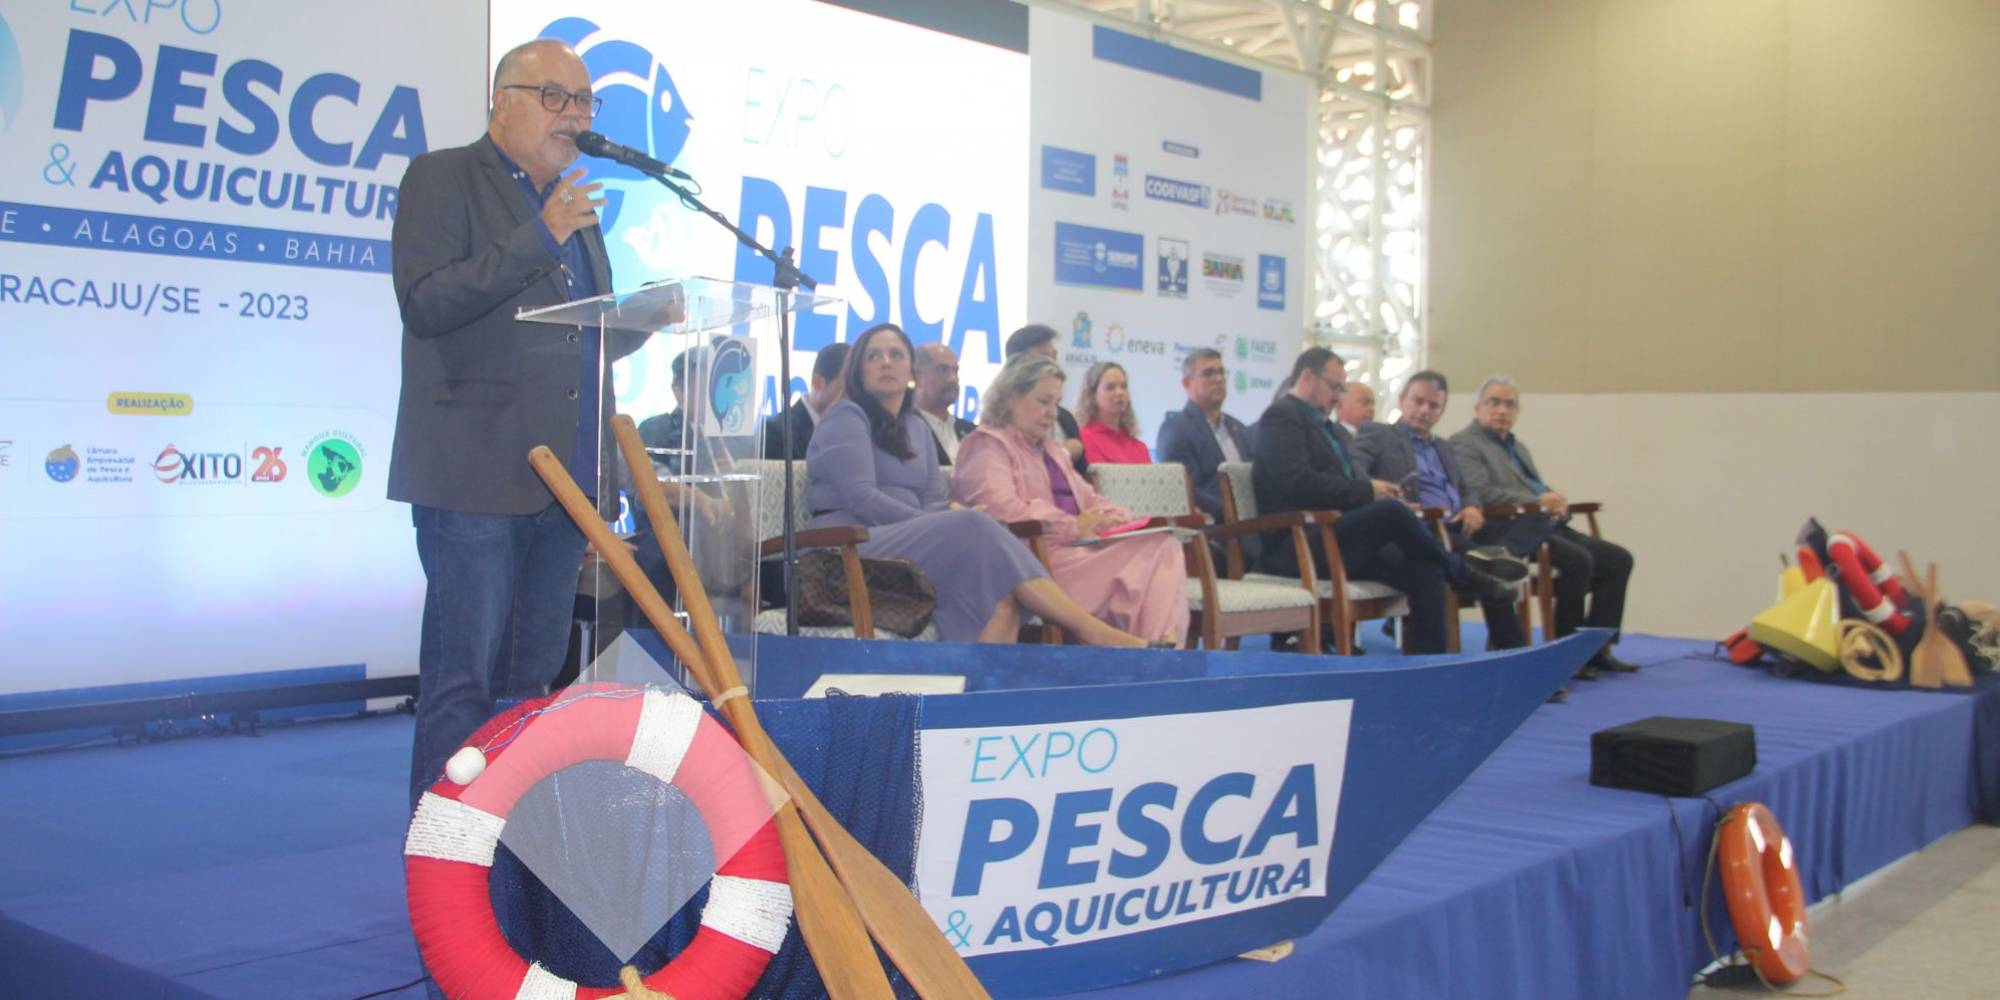 ExpoPesca e Aquicultura une SEALBA para fortalecimento do setor